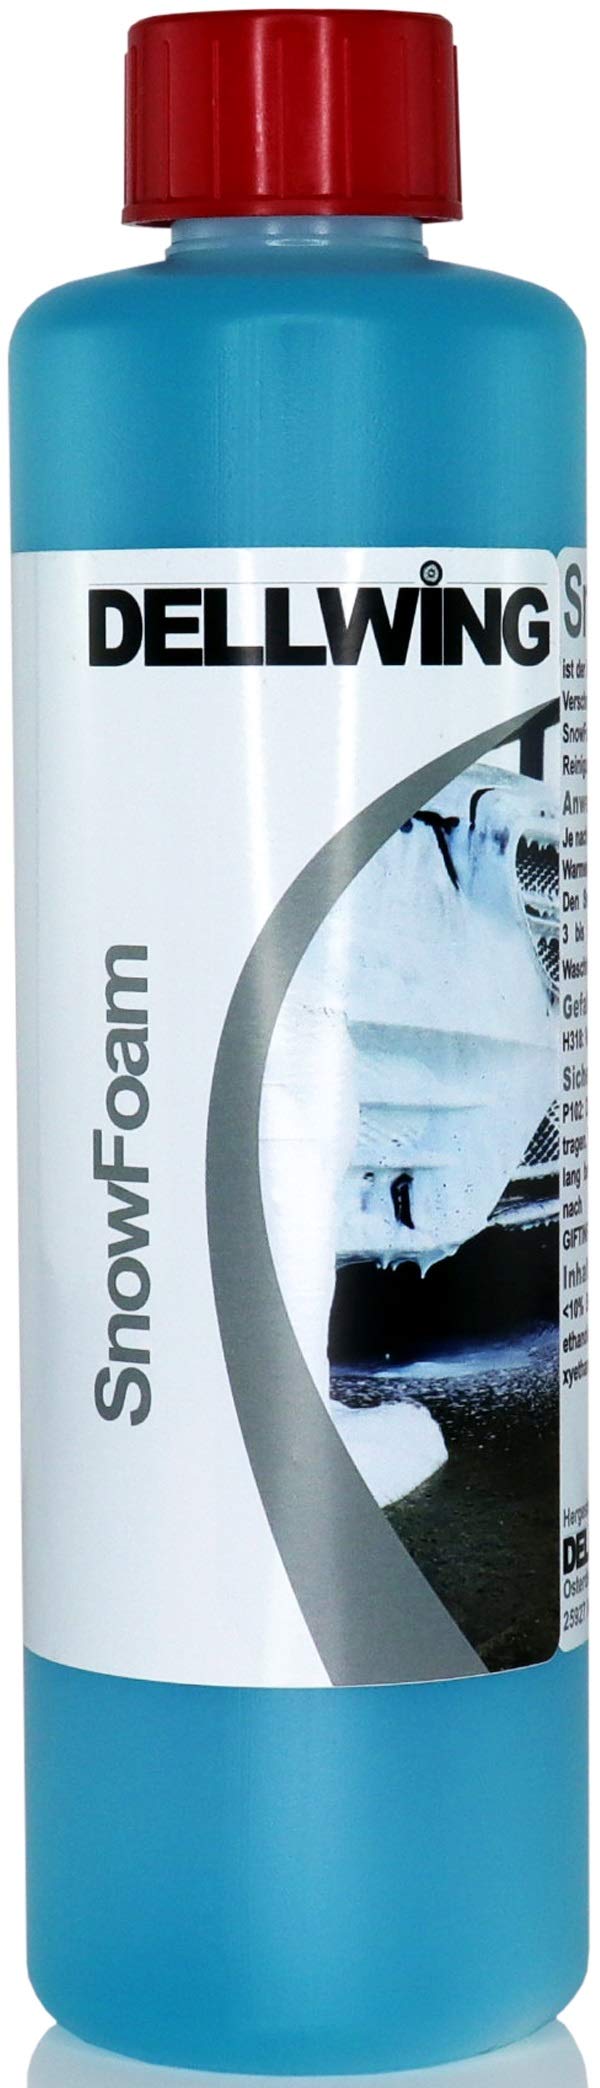 DELLWING Snow Foam Shampoo Tropical 500 ml - Ideal für die sanfte Vorwäsche - Bildet eine dicke und langanhaltende Schaumdecke mit einem schönen Duft von DELLWING